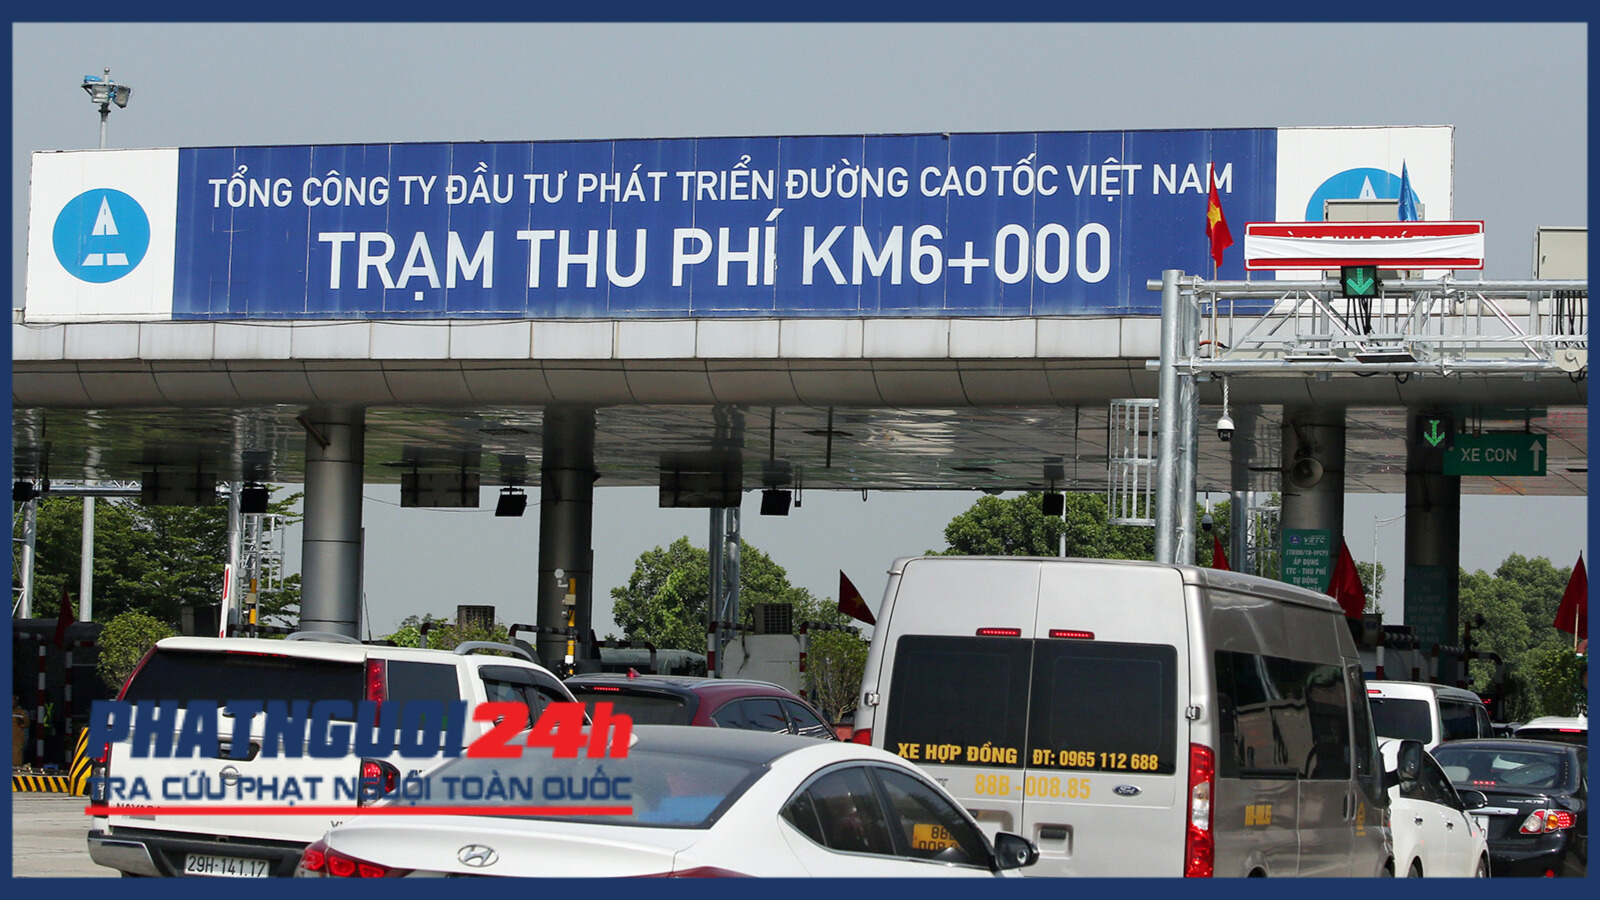 Trạm thu phí trên tuyến cao tốc Nội Bài - Lào Cai do VEC đầu tư, khai thác